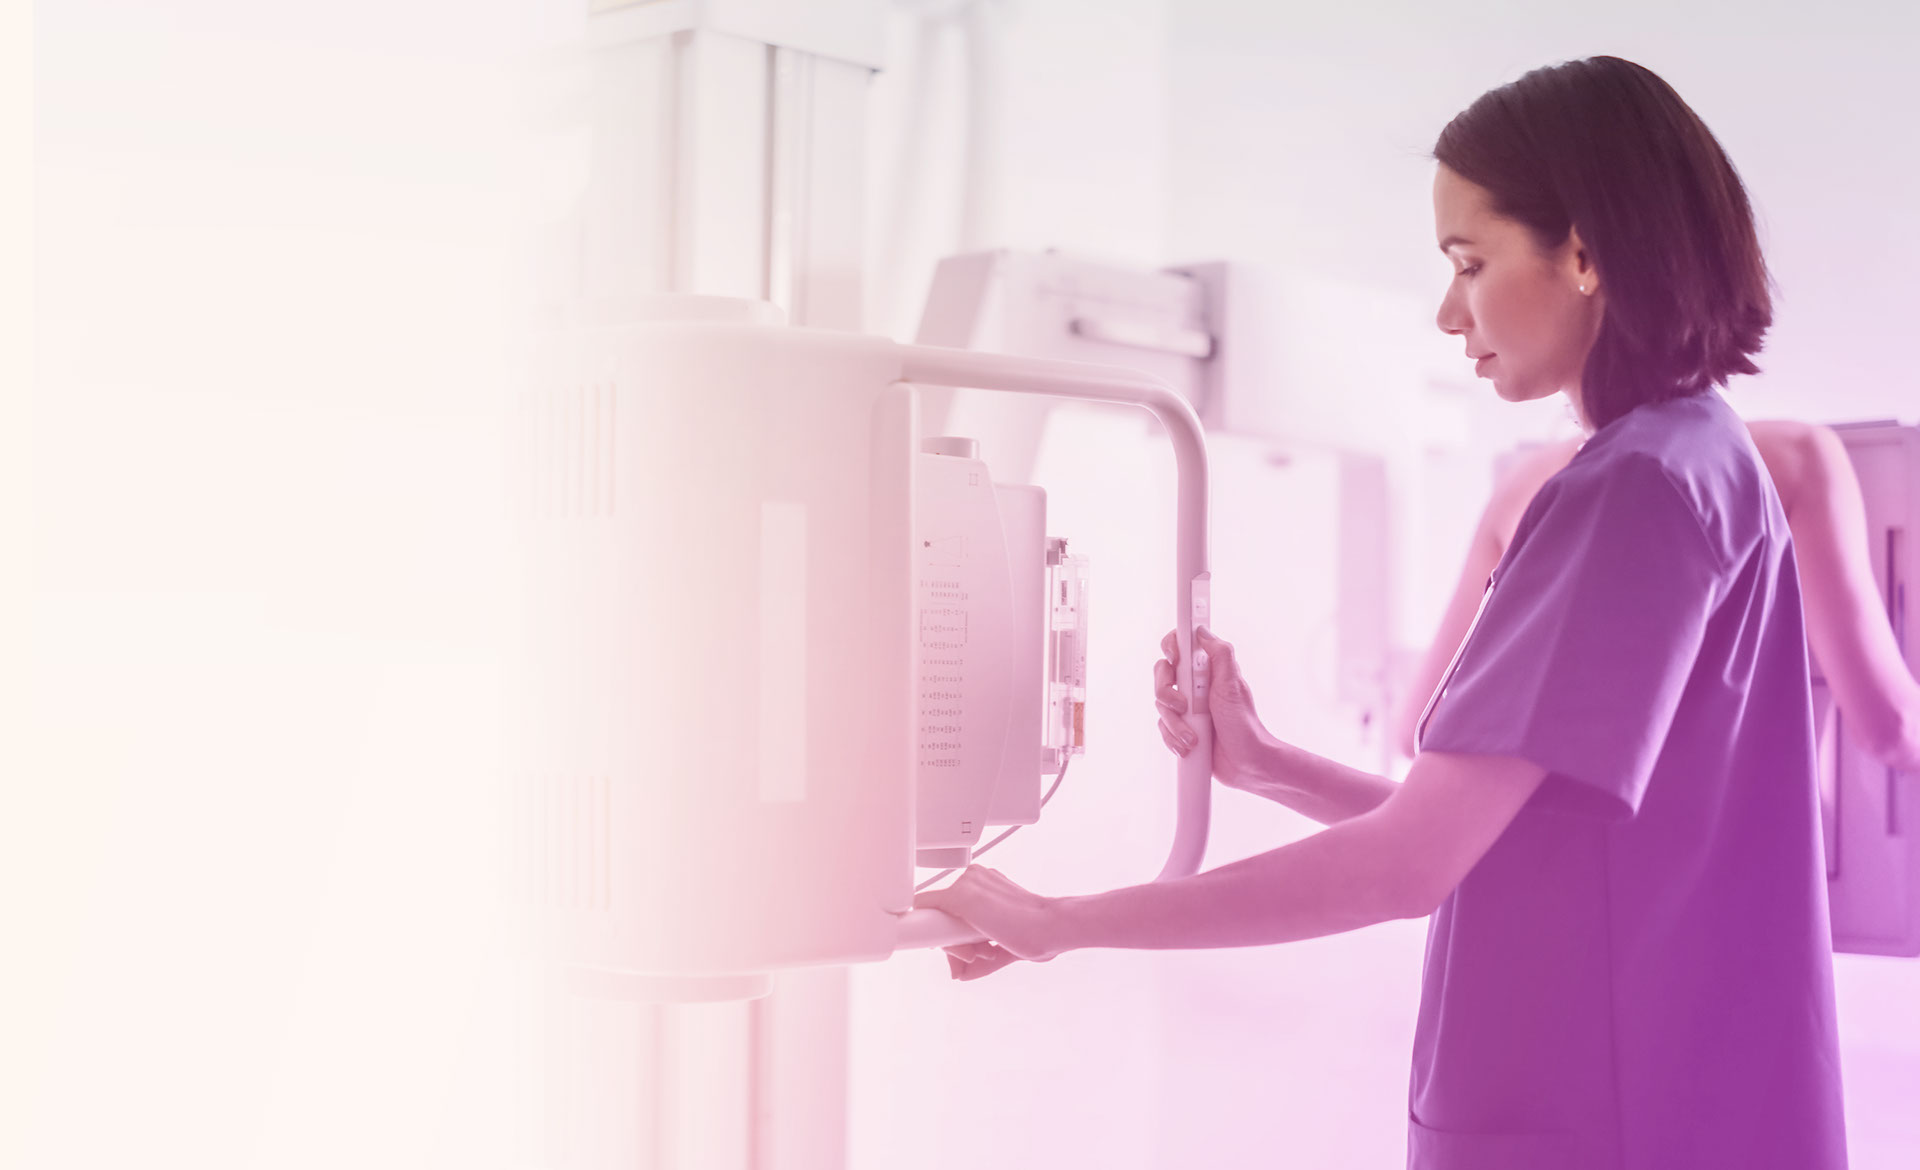 O que significam microcalcificações na mamografia?